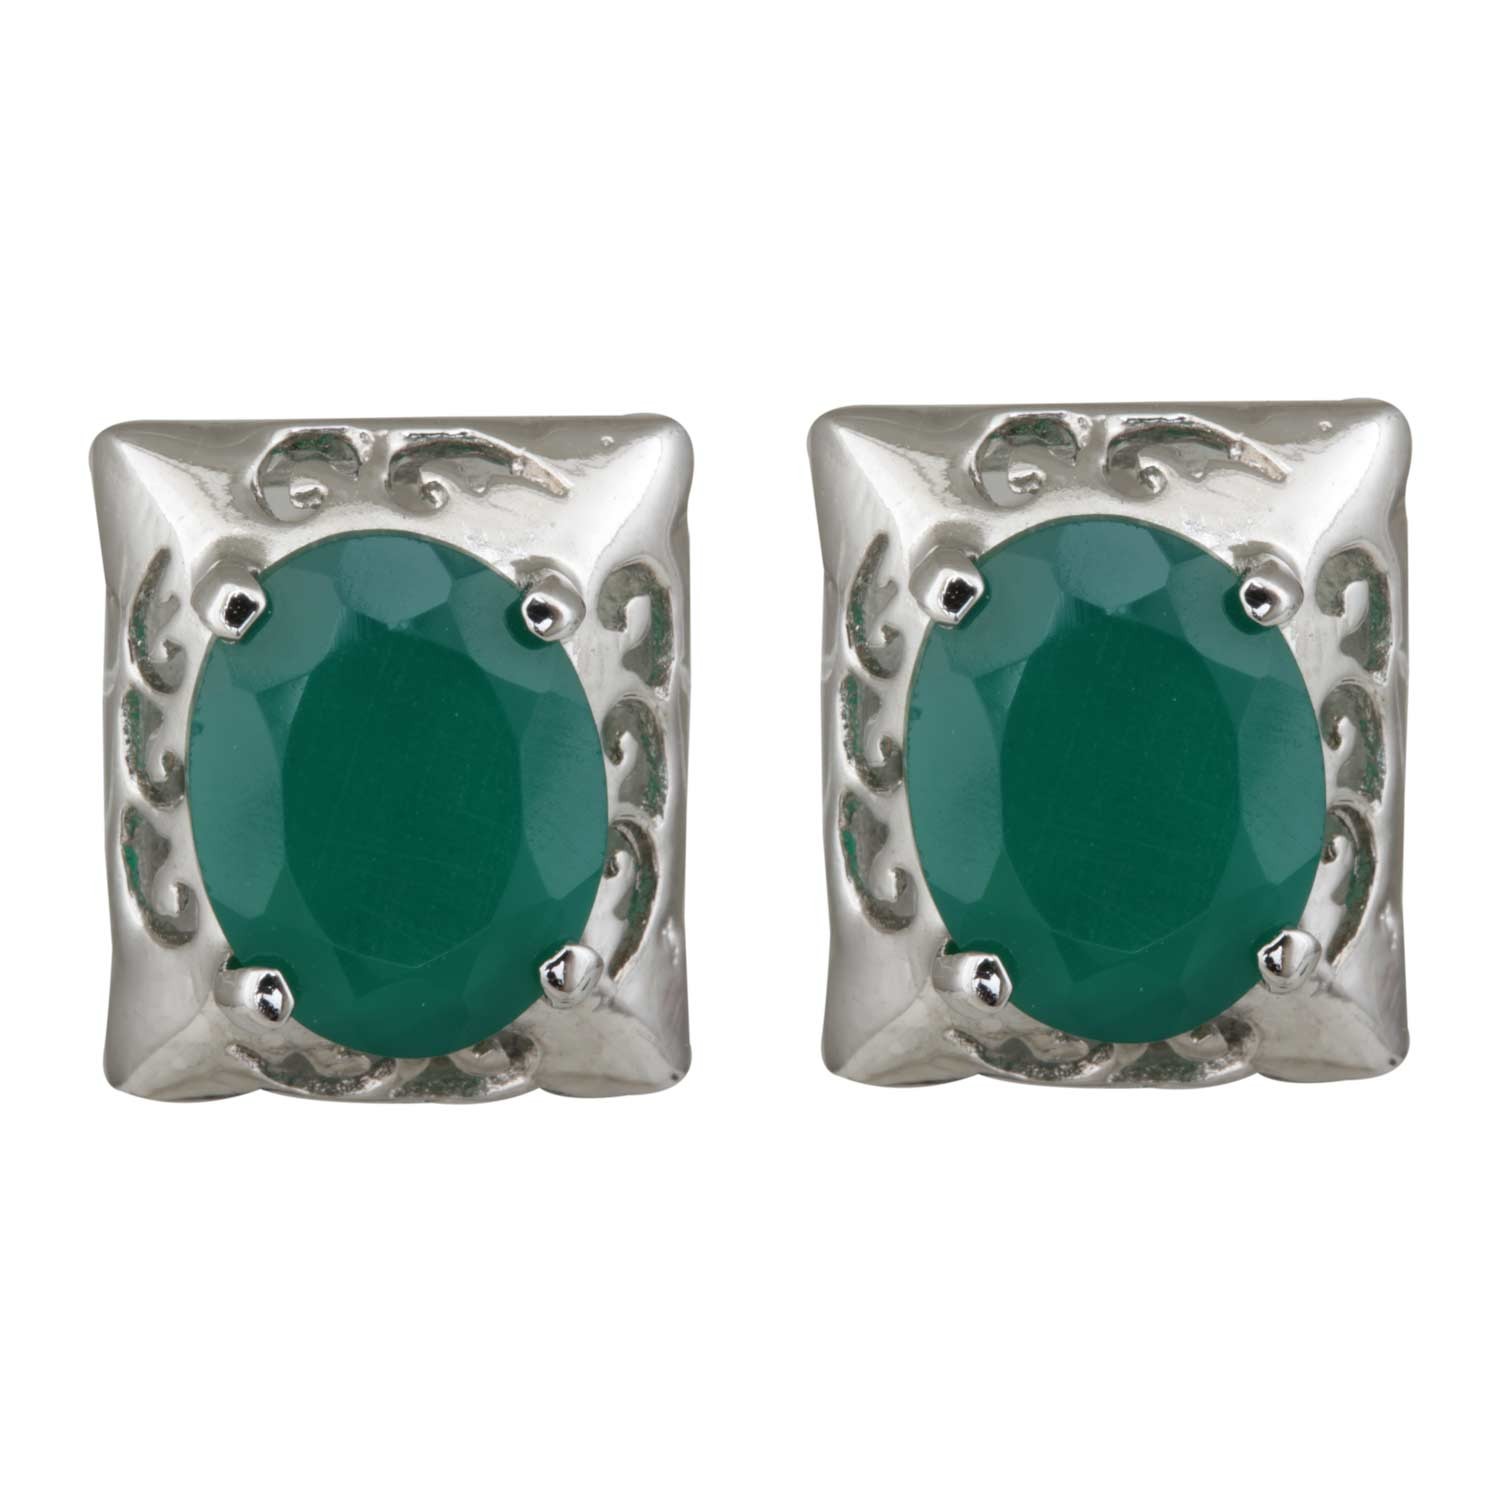 Green Onyx Rectangular Stud Earrings for Women and Girls